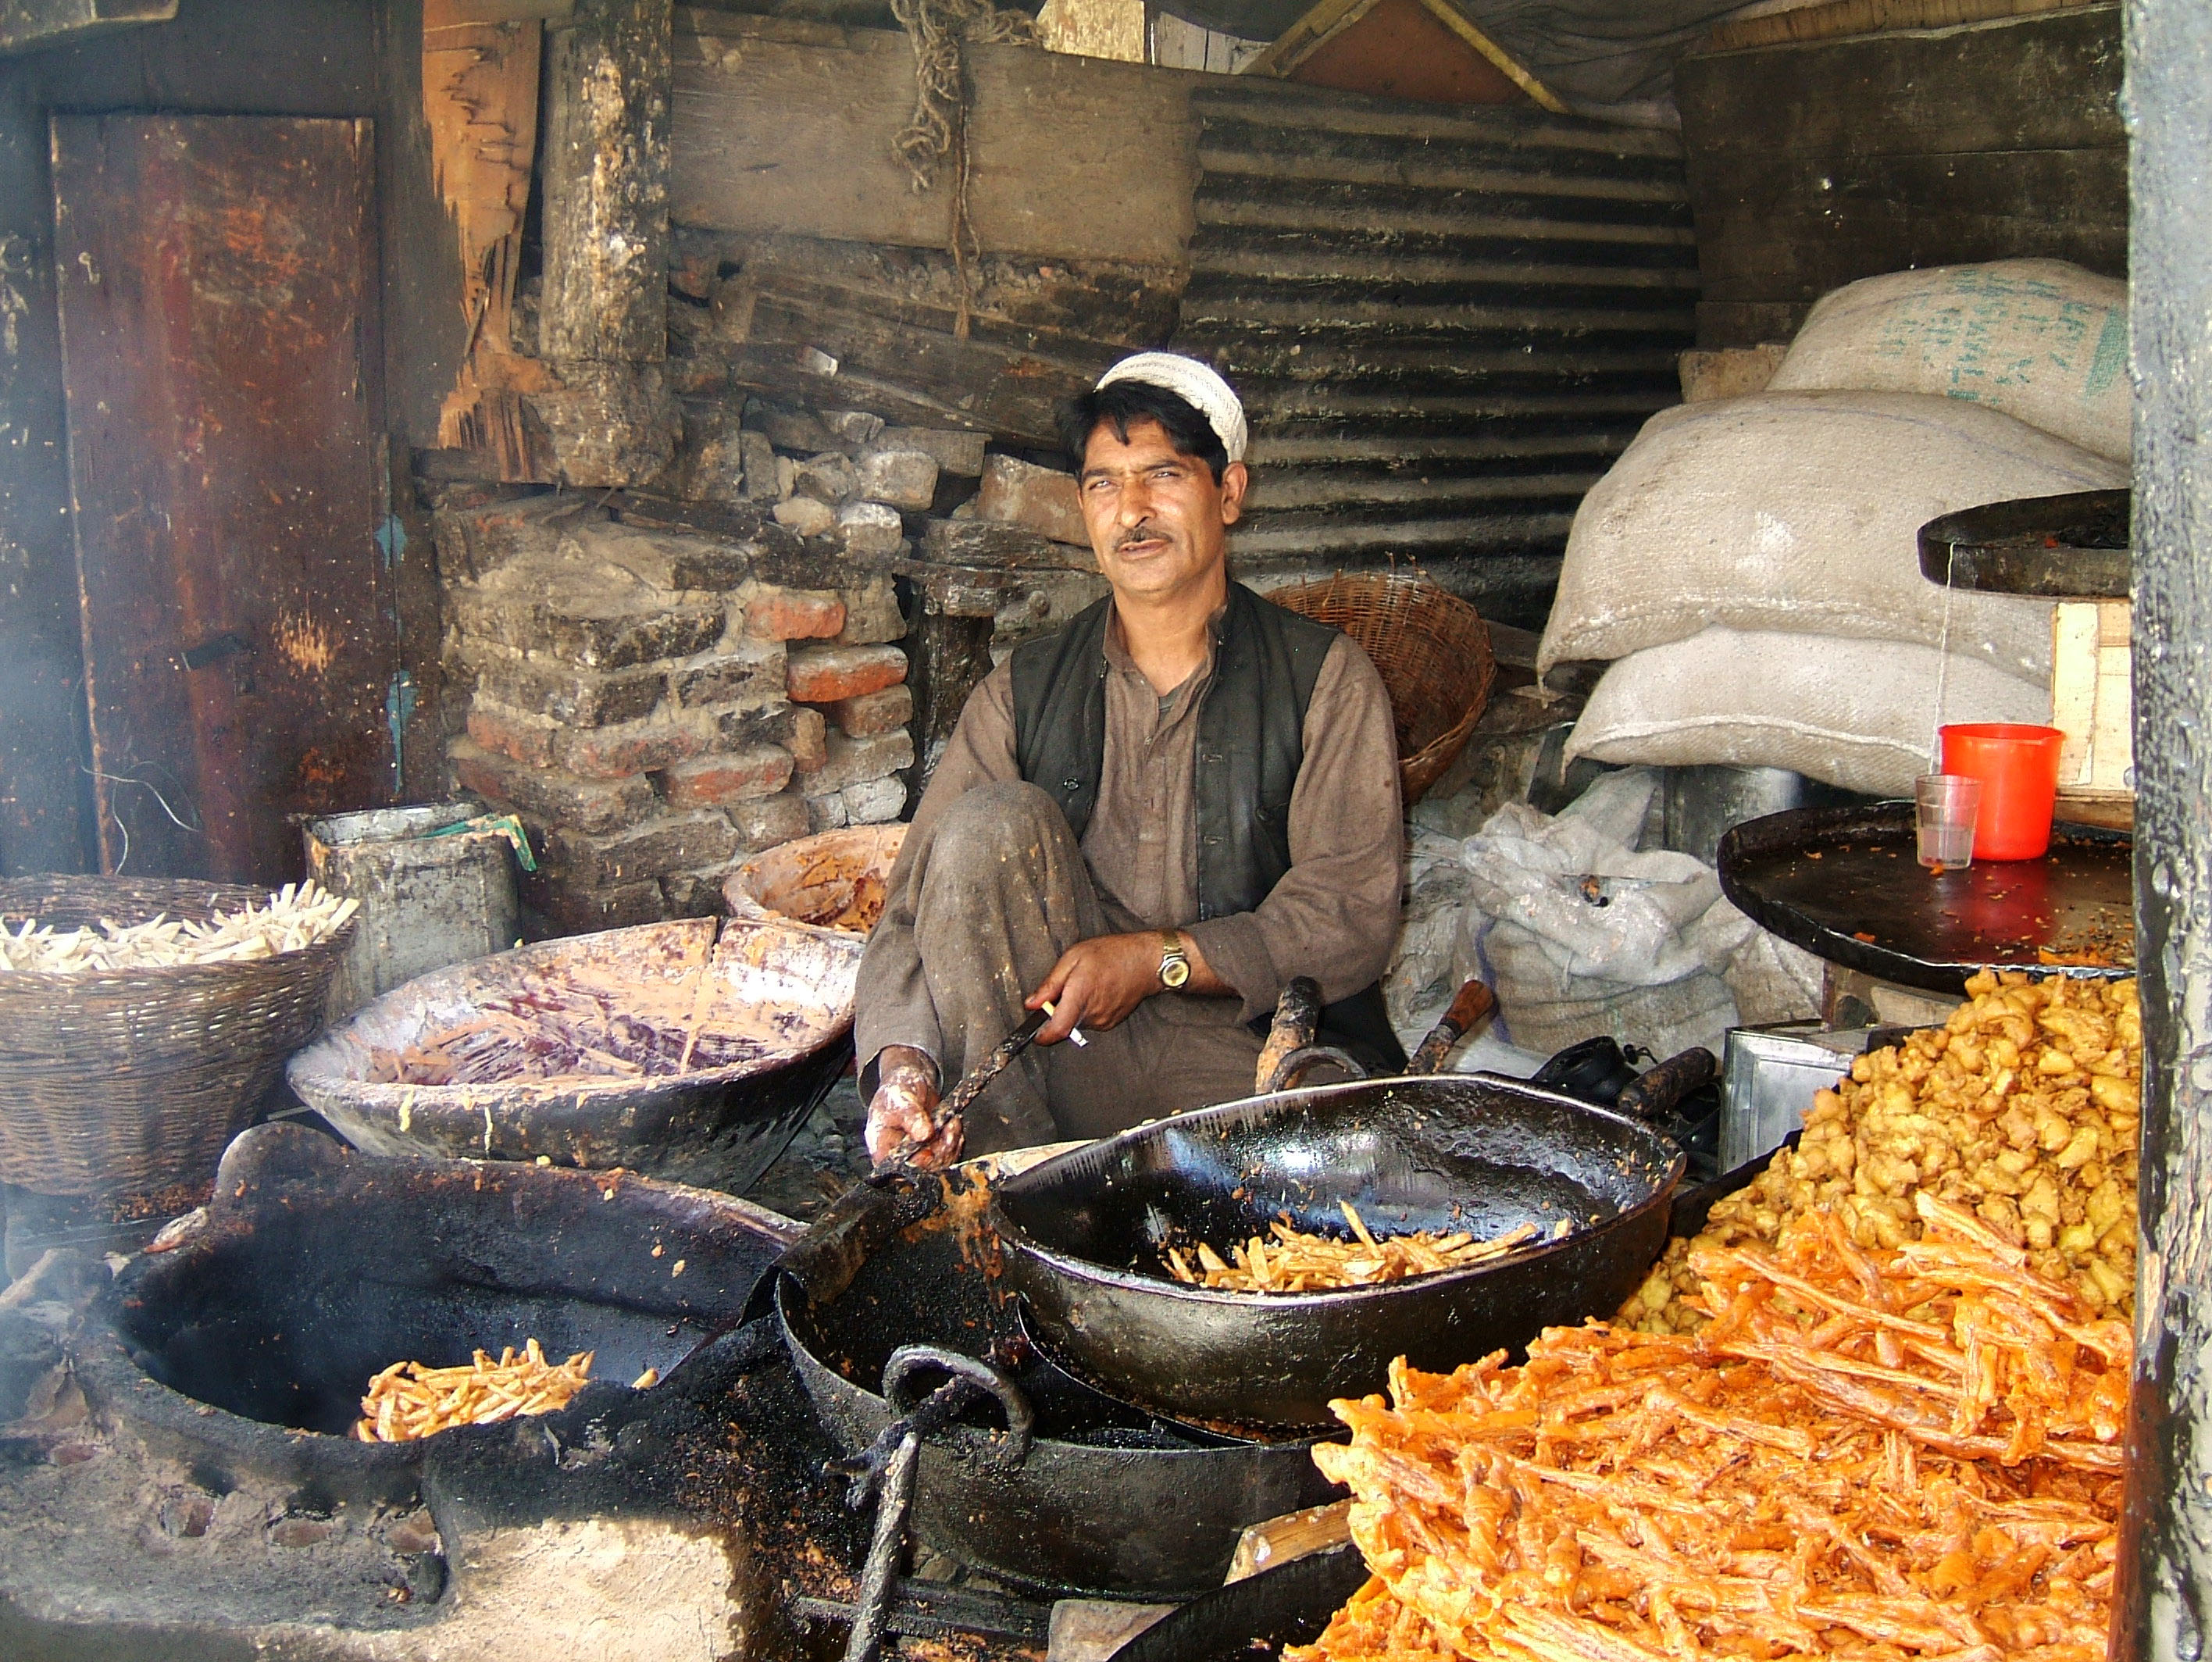 Kashmir Srinagar local food India Apr 2004 01